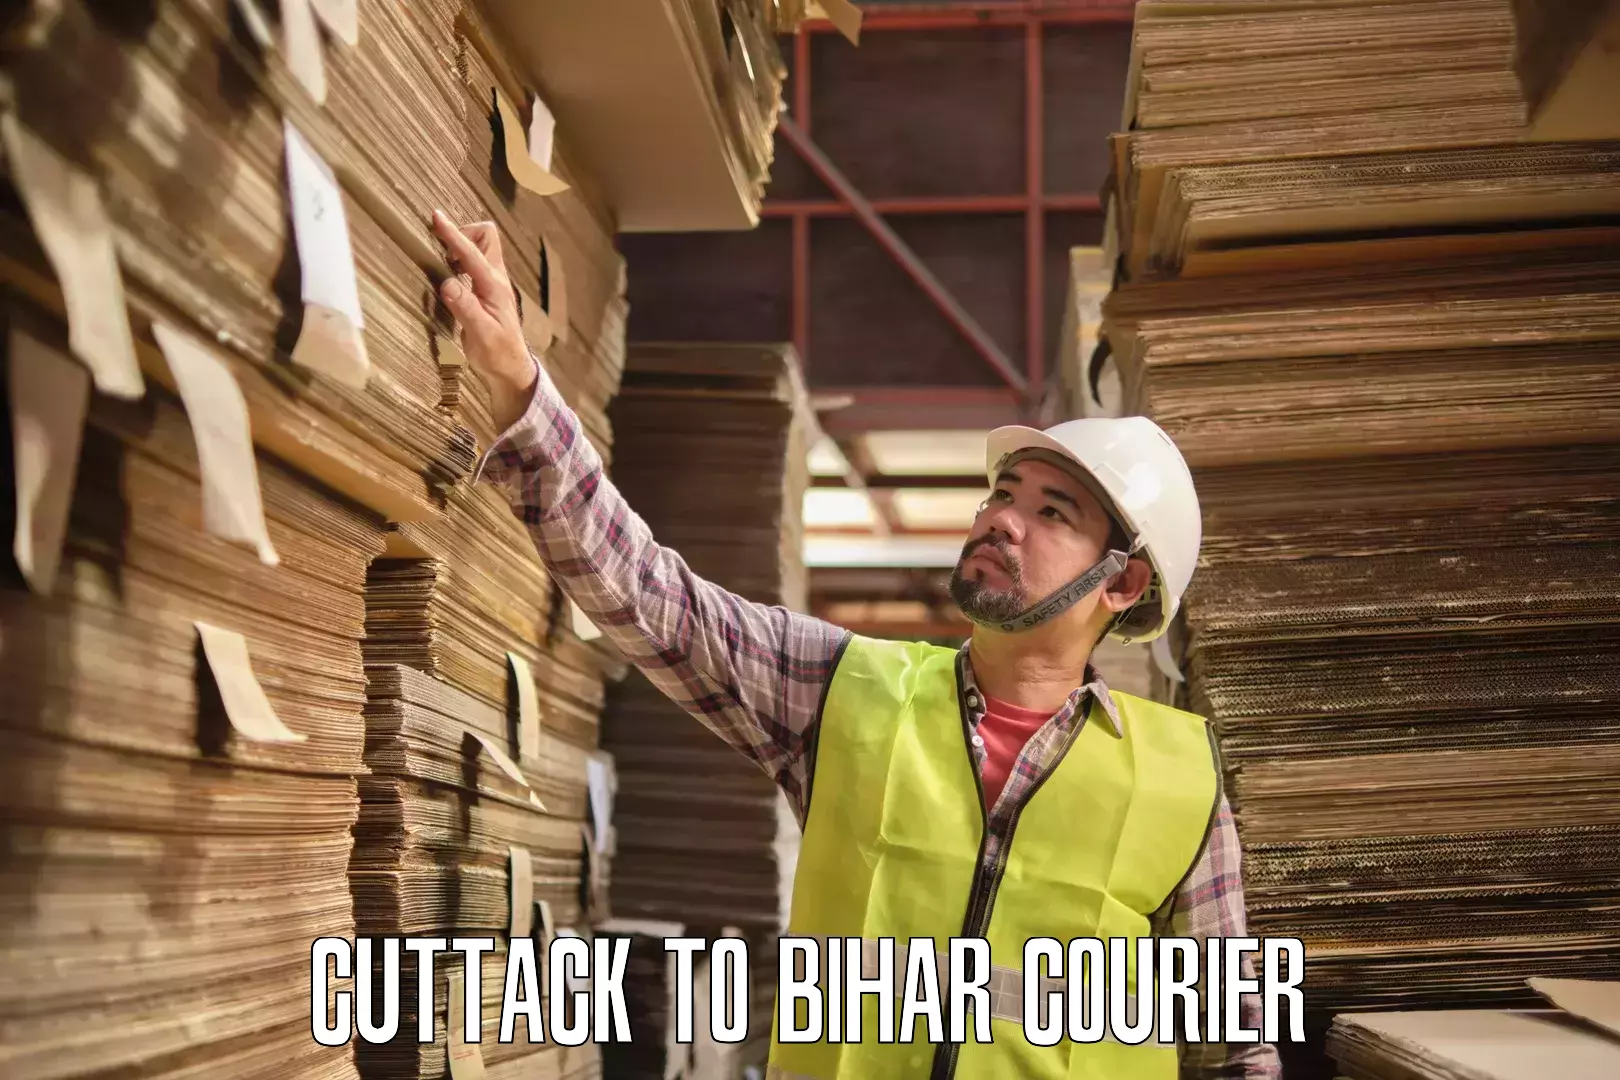 Efficient cargo handling Cuttack to Bihar